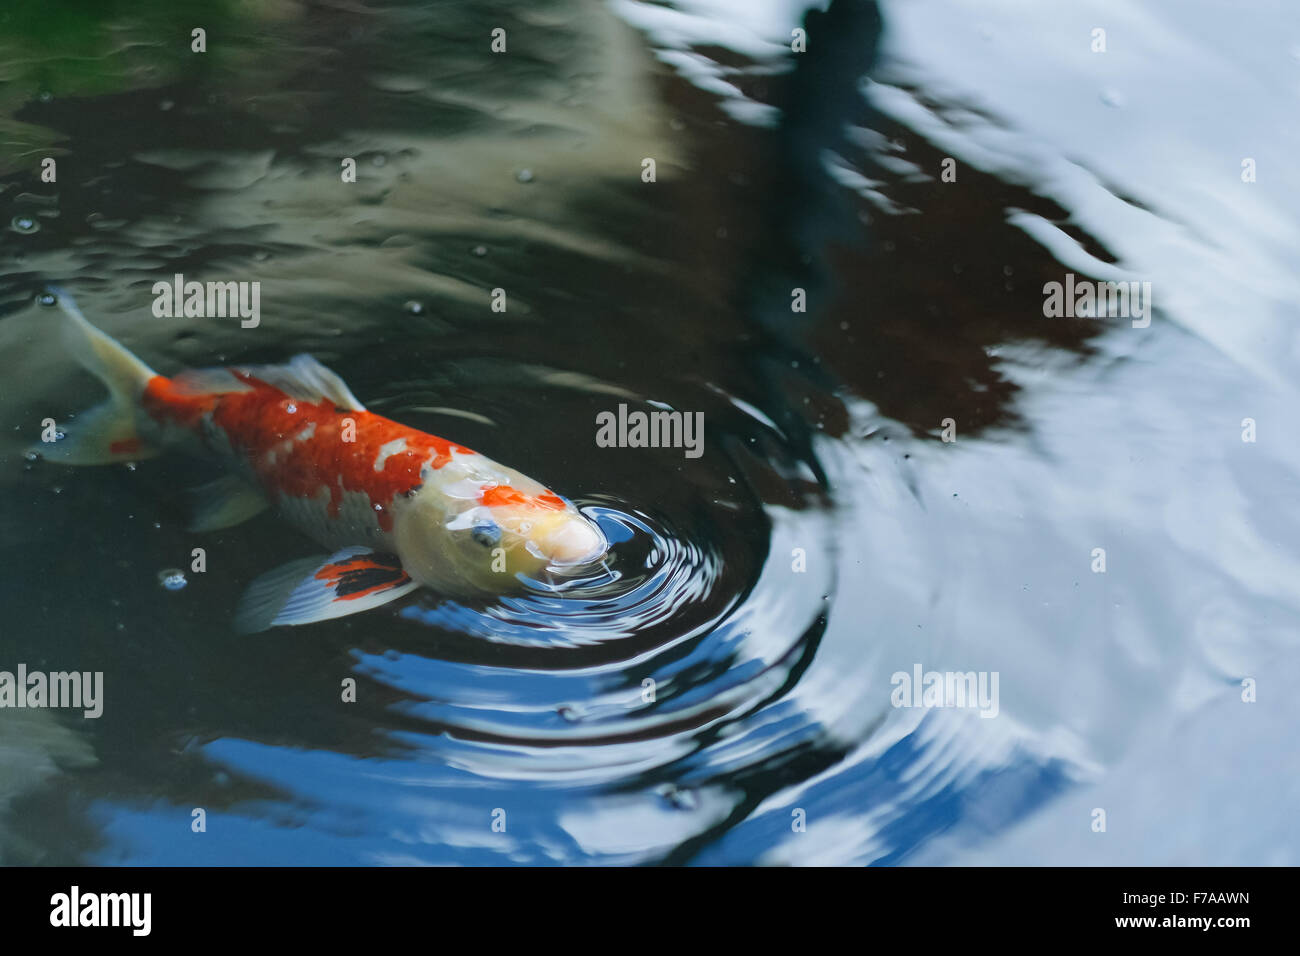 La respiration du poisson carpe fantaisie sur la surface de la piscine Banque D'Images